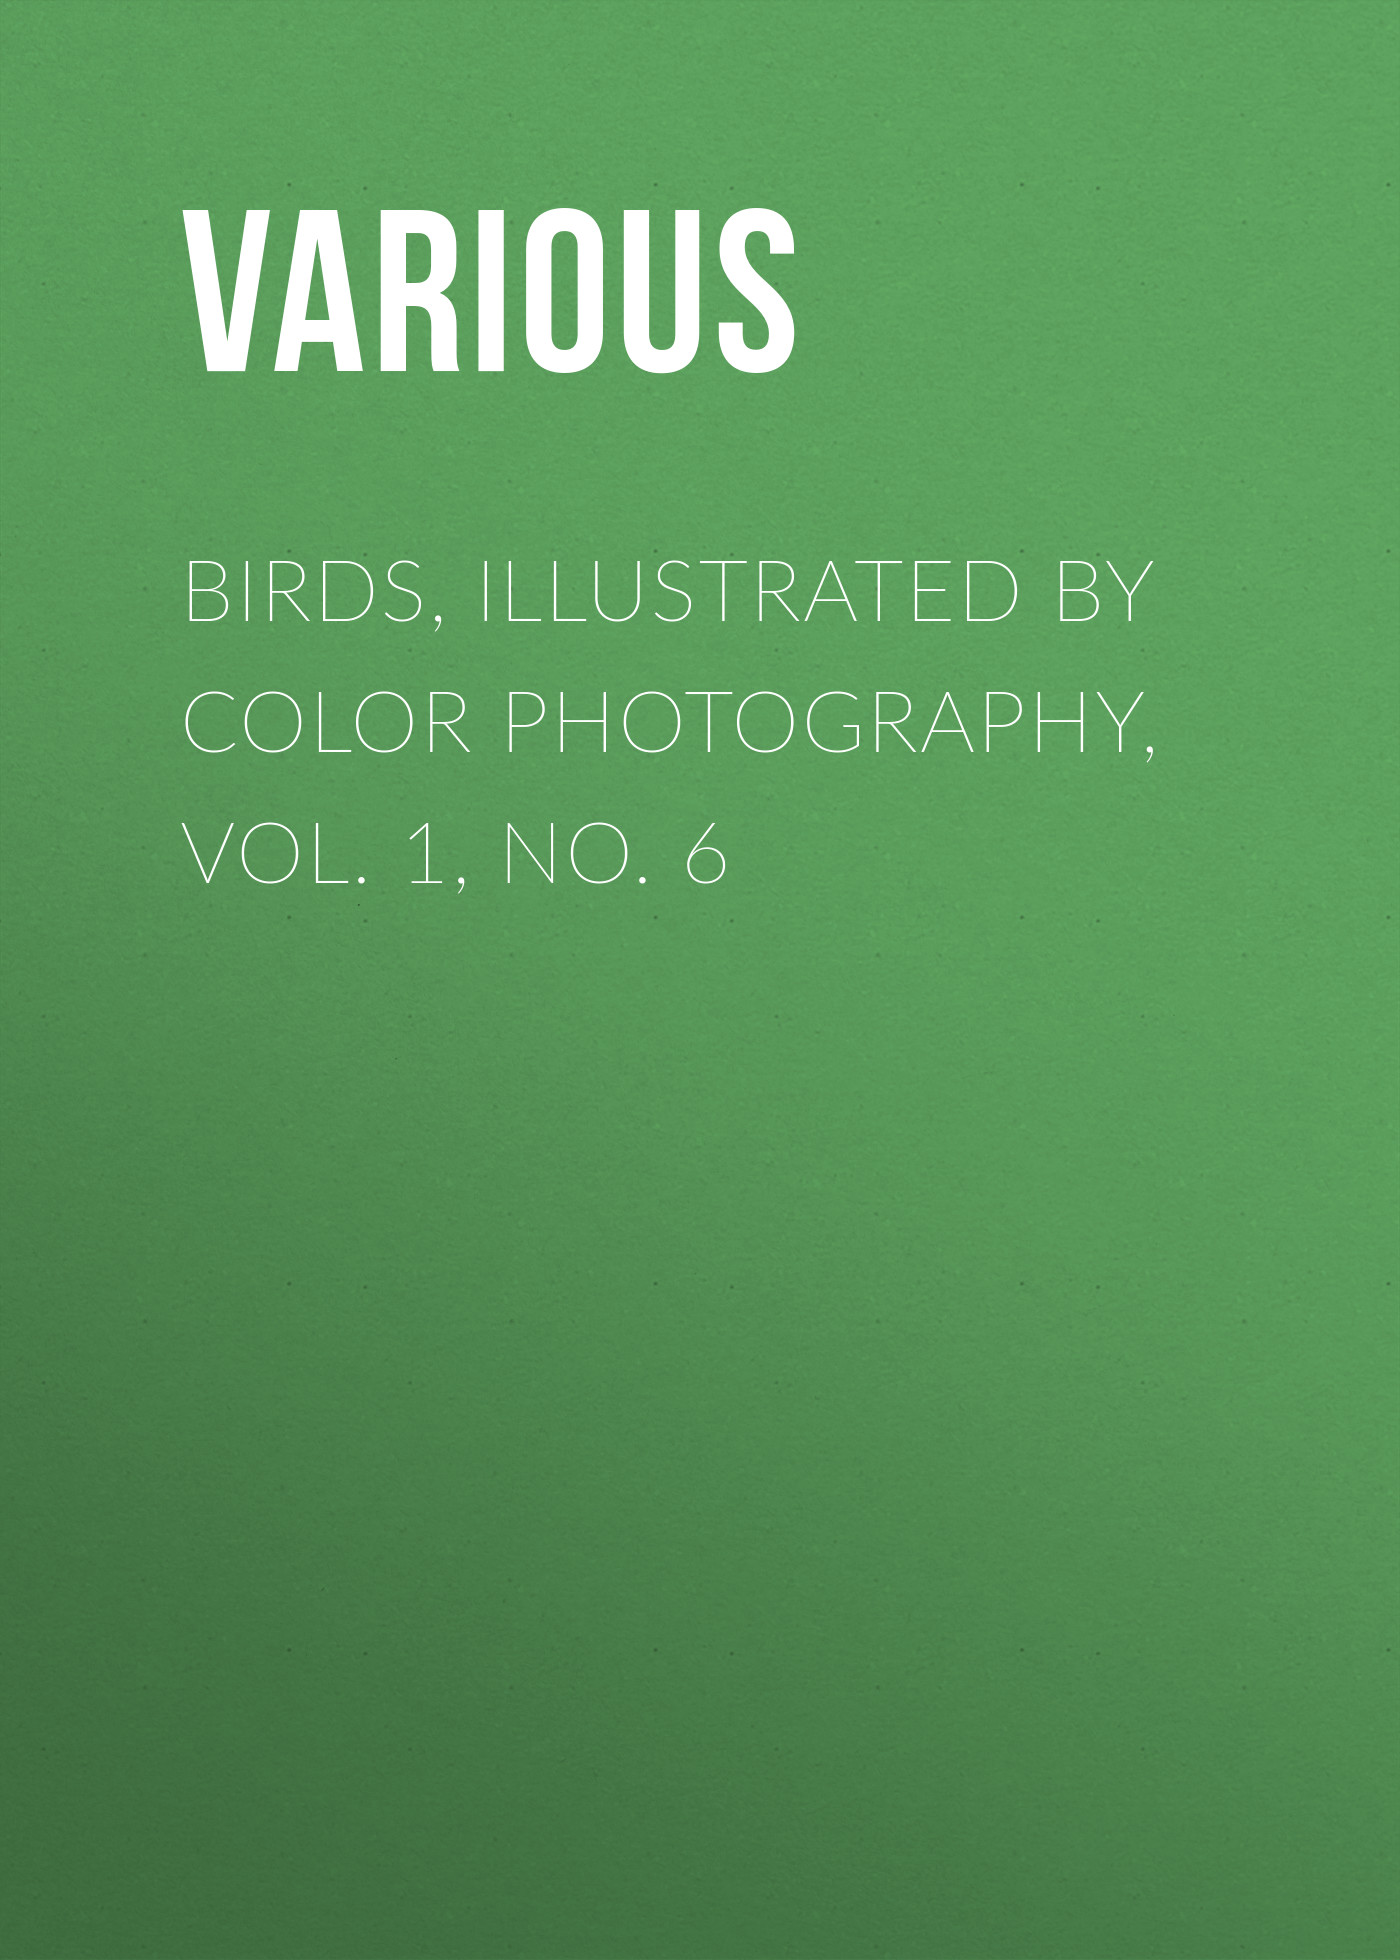 Книга Birds, Illustrated by Color Photography, Vol. 1, No. 6 из серии , созданная  Various, может относится к жанру Журналы, Биология, Природа и животные, Зарубежная образовательная литература. Стоимость электронной книги Birds, Illustrated by Color Photography, Vol. 1, No. 6 с идентификатором 25570871 составляет 0 руб.